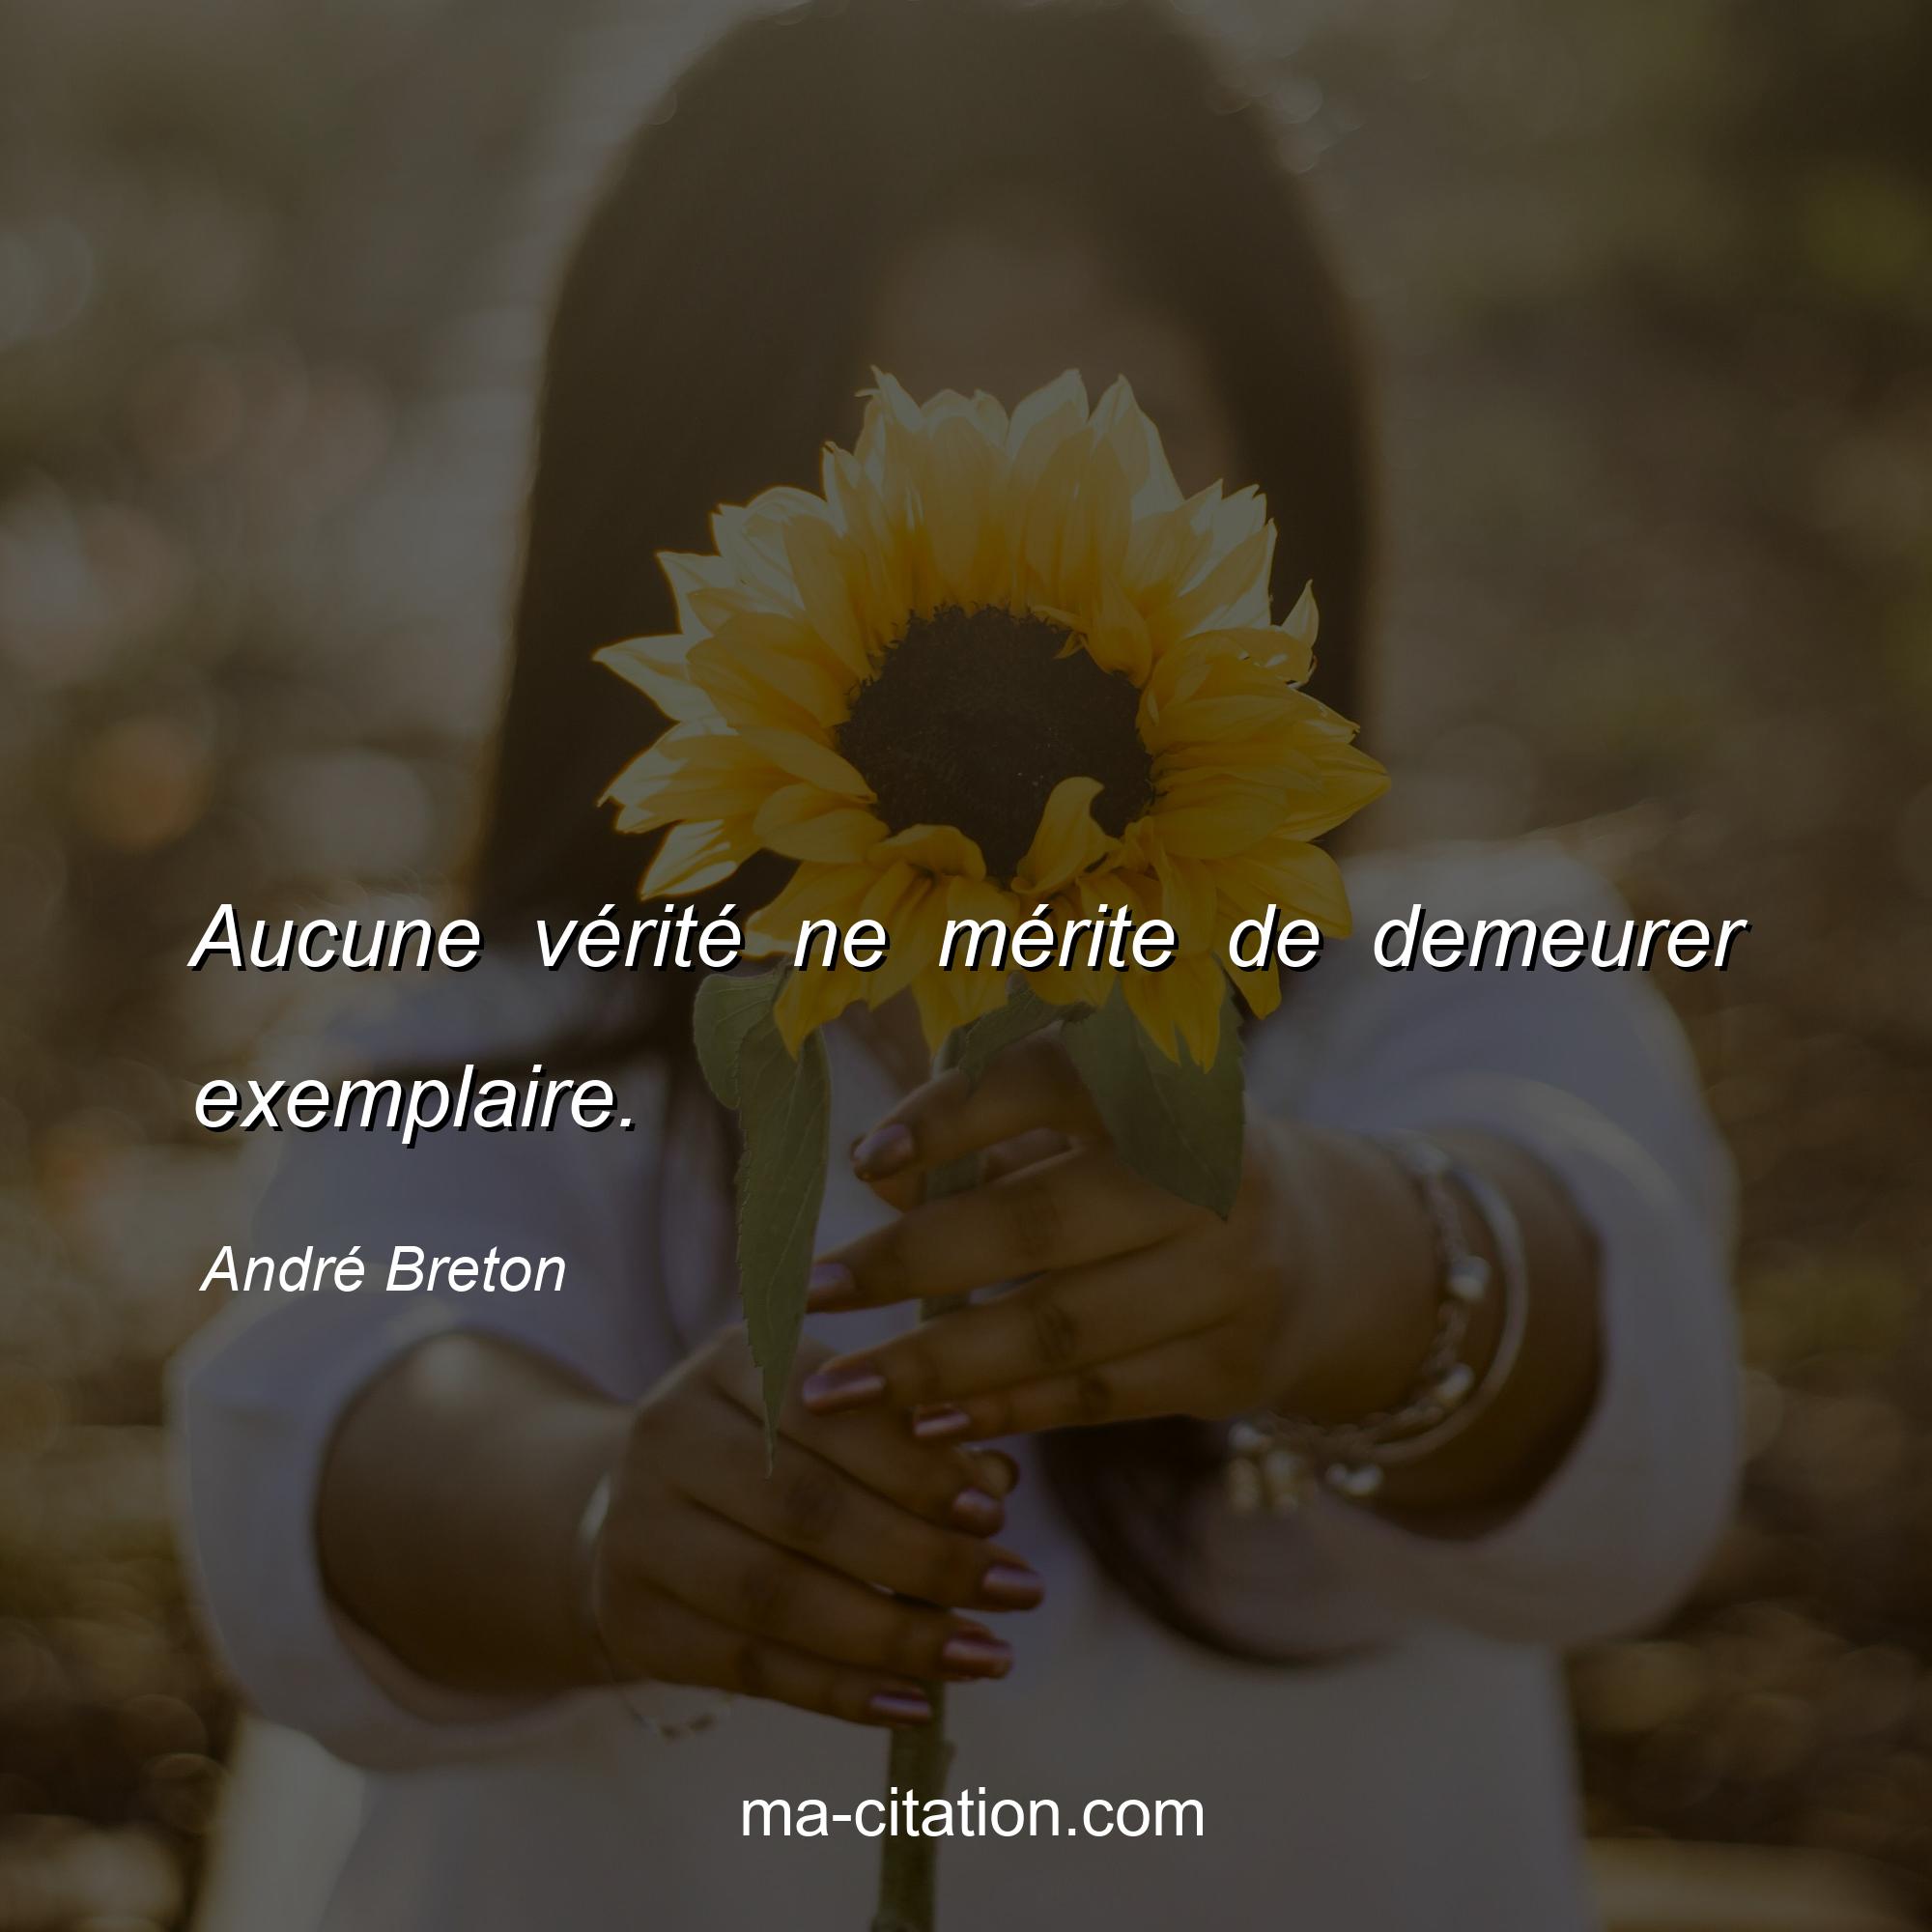 André Breton : Aucune vérité ne mérite de demeurer exemplaire.